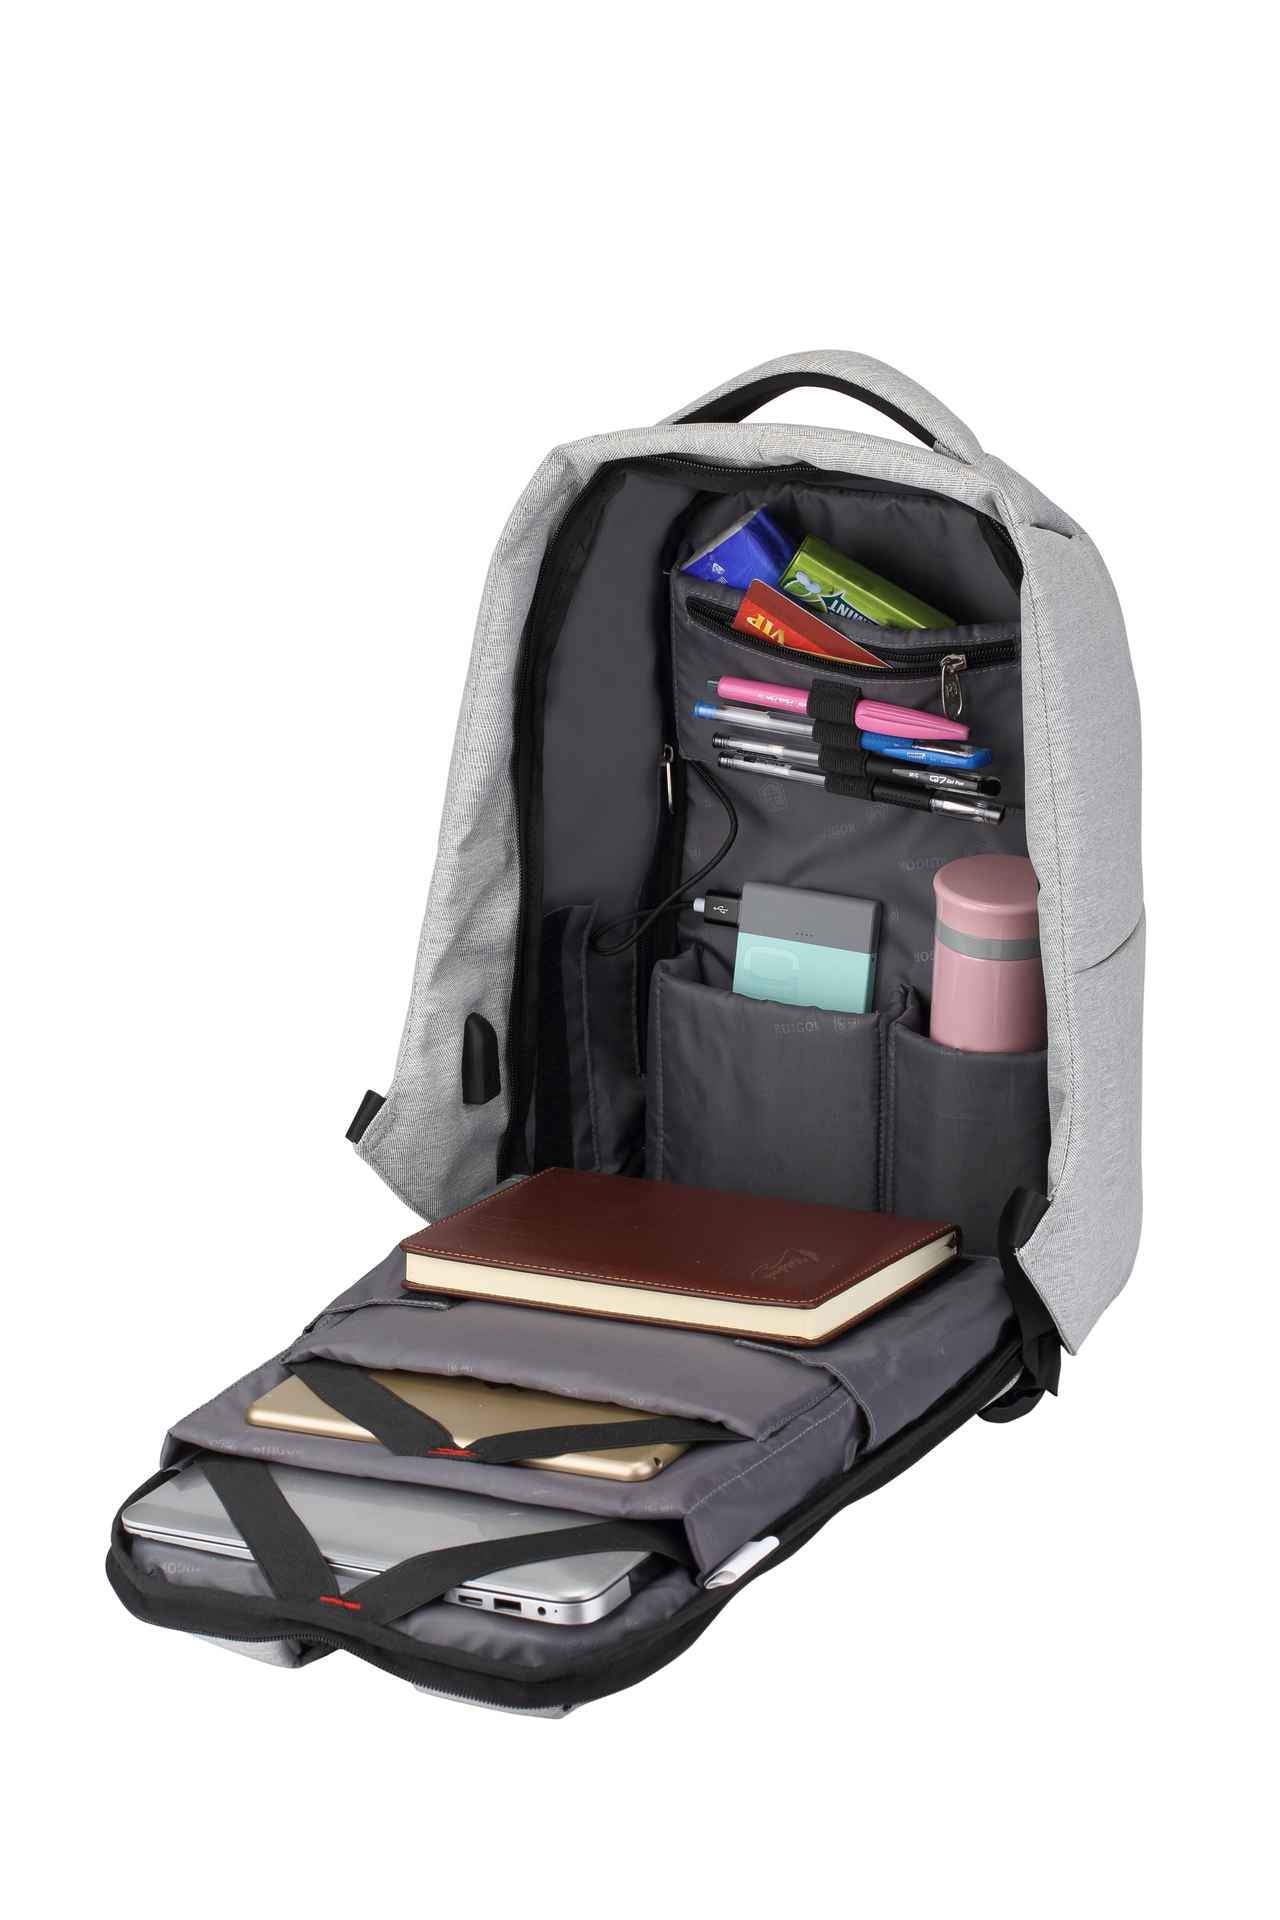 RUIGOR LINK 39 Laptop Backpack Black-Grey